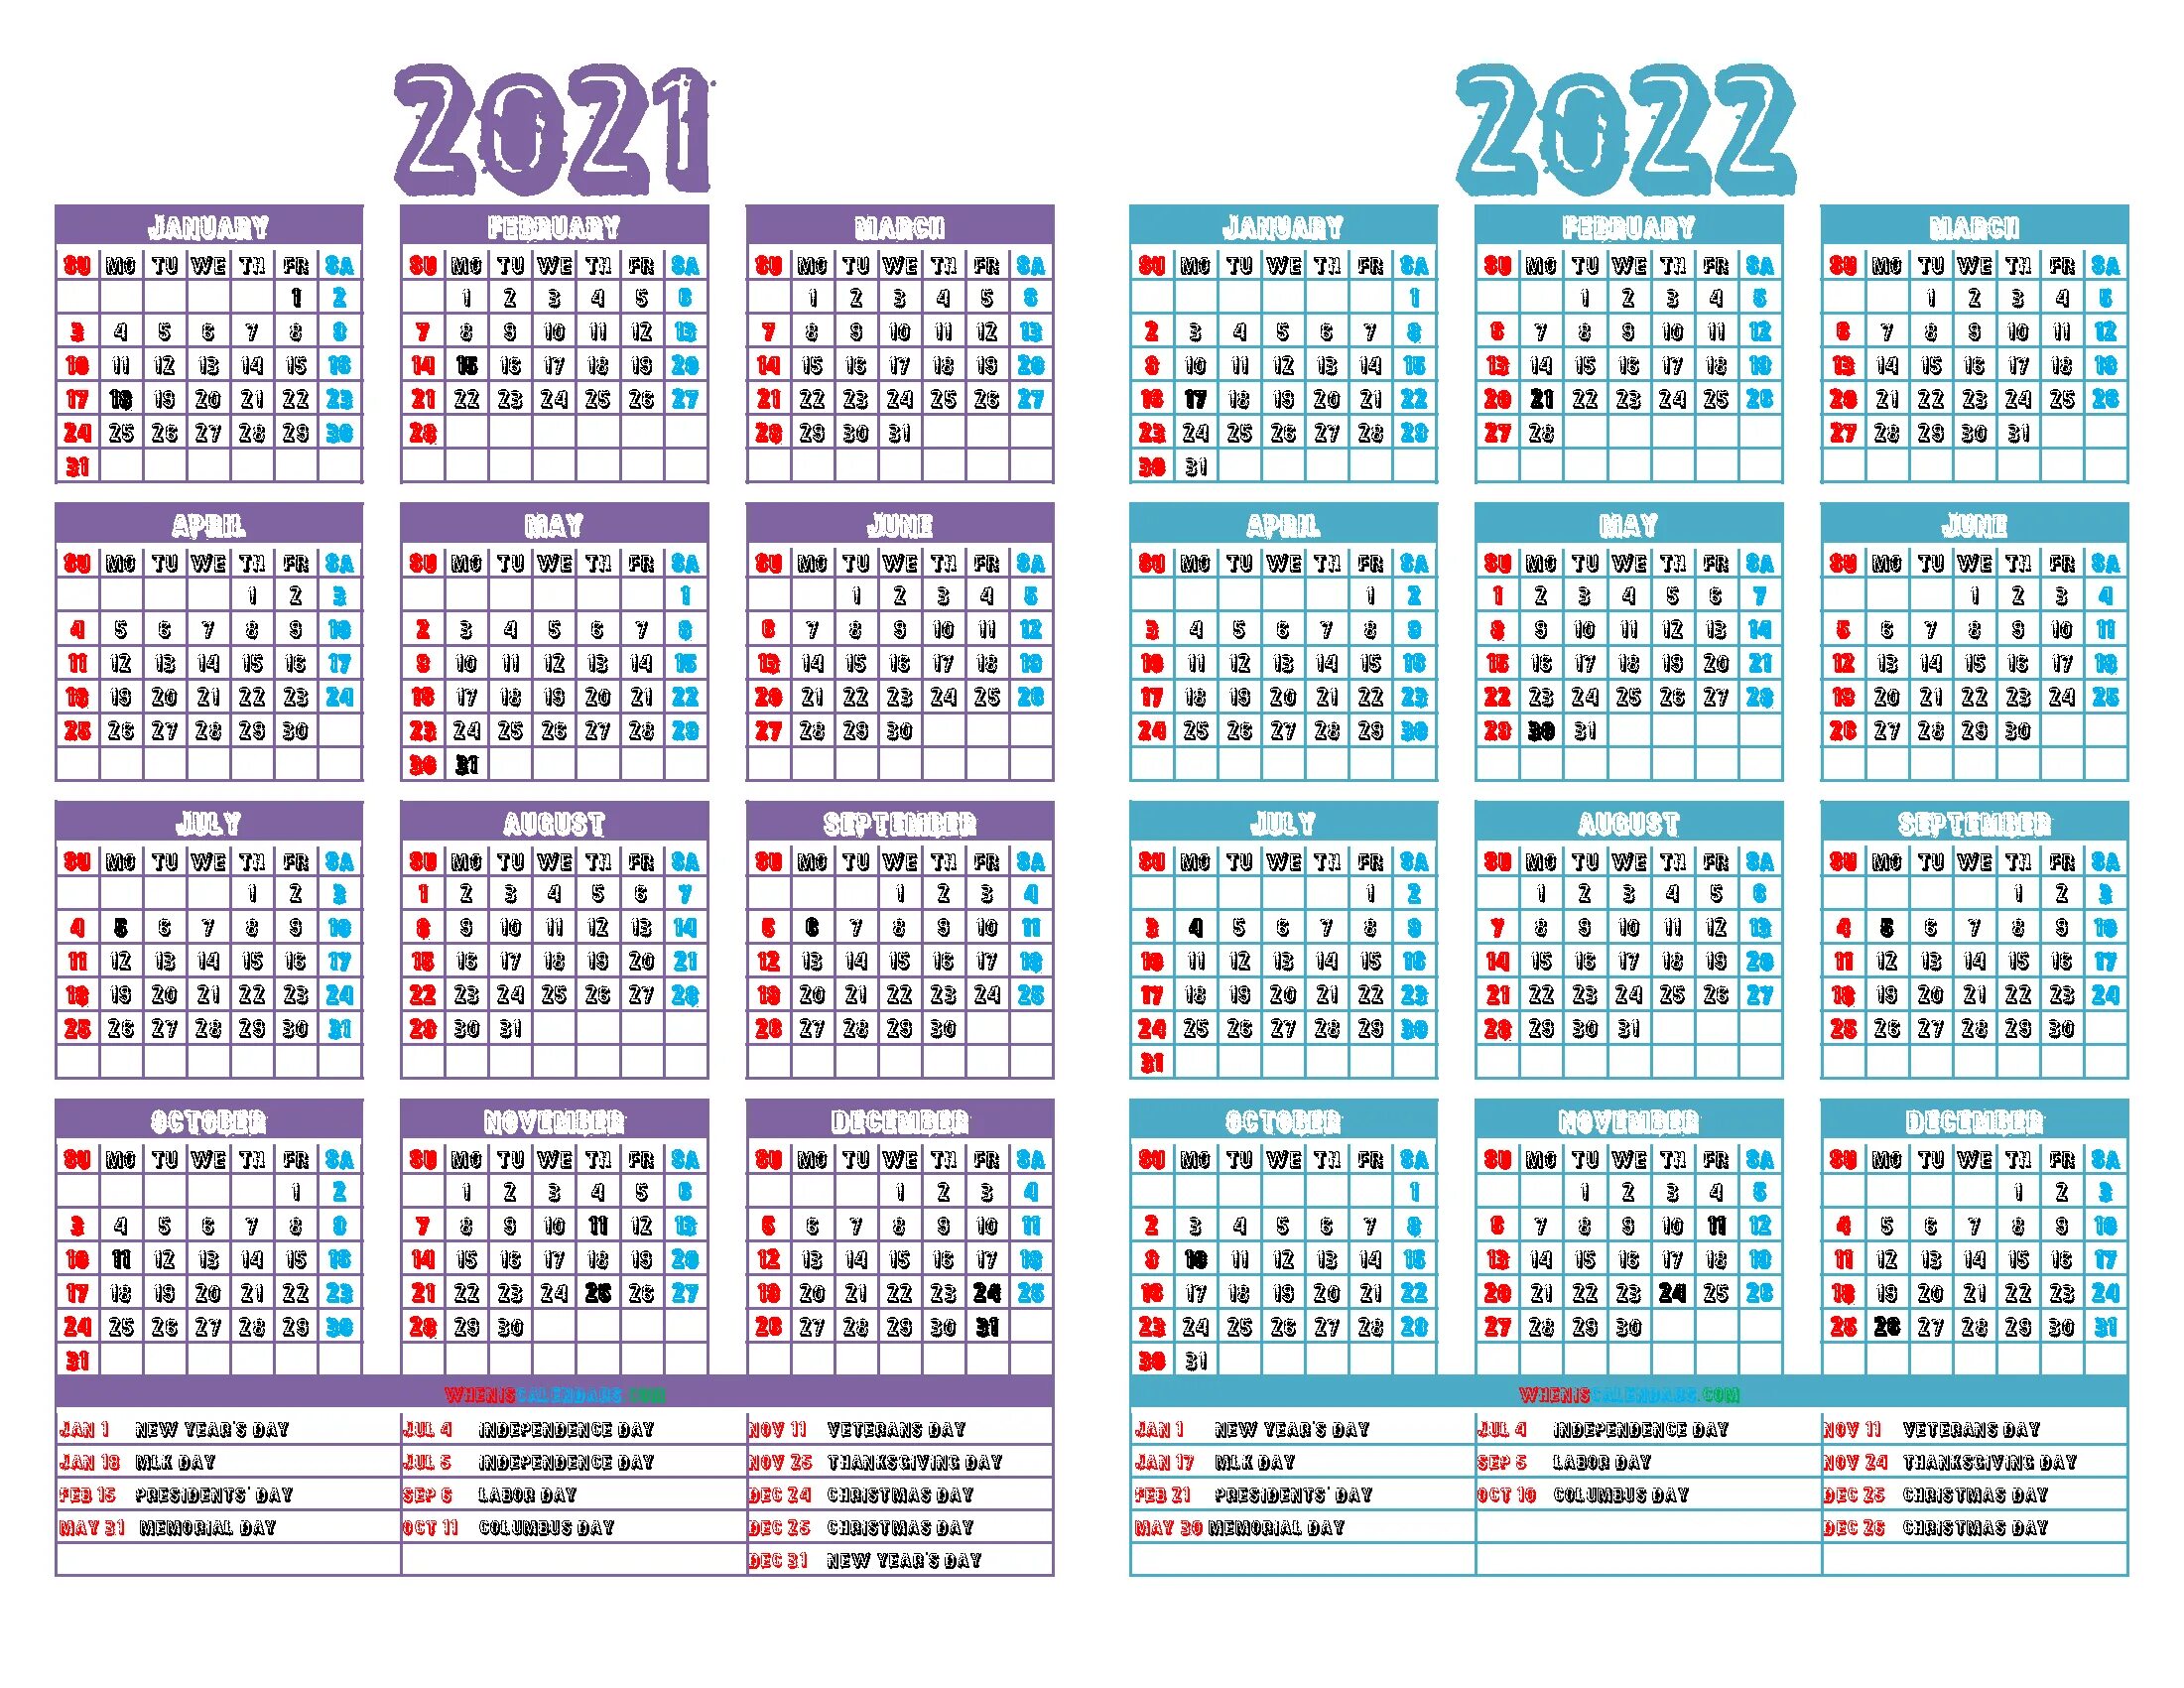 Производственный календарь на 2022 год. Трудовой календарь на 2022 год. Производственный календарь 2022 в excel. Производственный 2022 с праздниками.